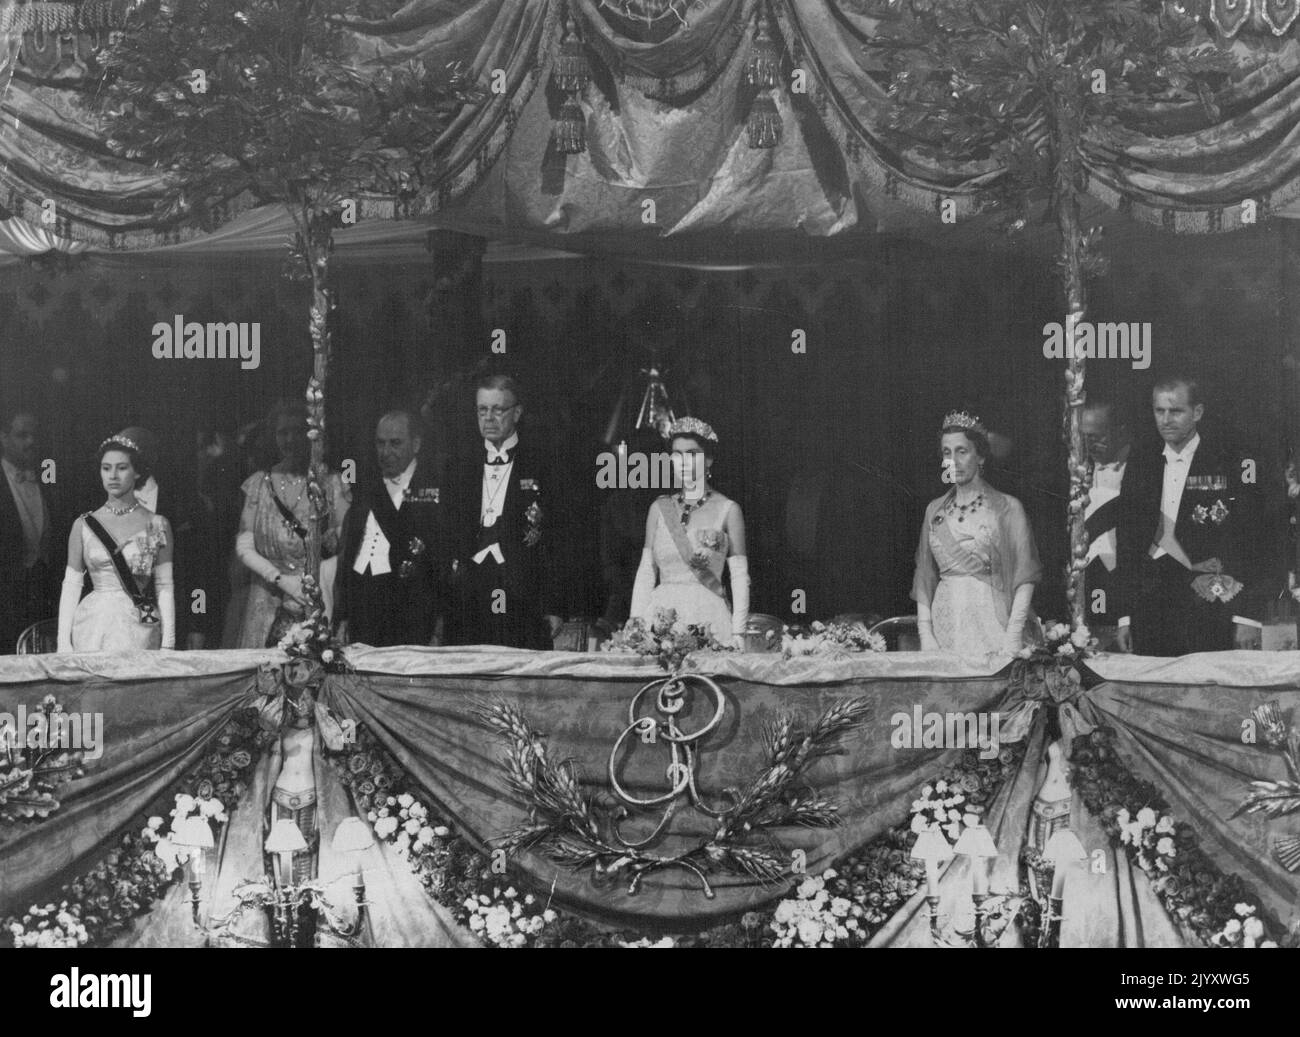 Gioielli e ordini ***** E colora la scena brillante nella scatola reale mentre la regina ed i suoi ospiti si levano in piedi durante il gioco della nazionale ***** Prima dello spettacolo di Gala, regalate al Royal Opera House Covent Grader, Londra, questa sera (mercoledì) in onore del re Gustav Adolf e della regina Luisa di Svezia, ora in visita di Stato in Gran Bretagna. Da sinistra a destra Principessa Margaret: Lord Waverley: Re ***** Adolf: La regina: La regina Luisa: Le marchee di Salisbury: E il duca di Edimburgo. Giugno 30, 1954. (Foto di Reuterphoto) Foto Stock